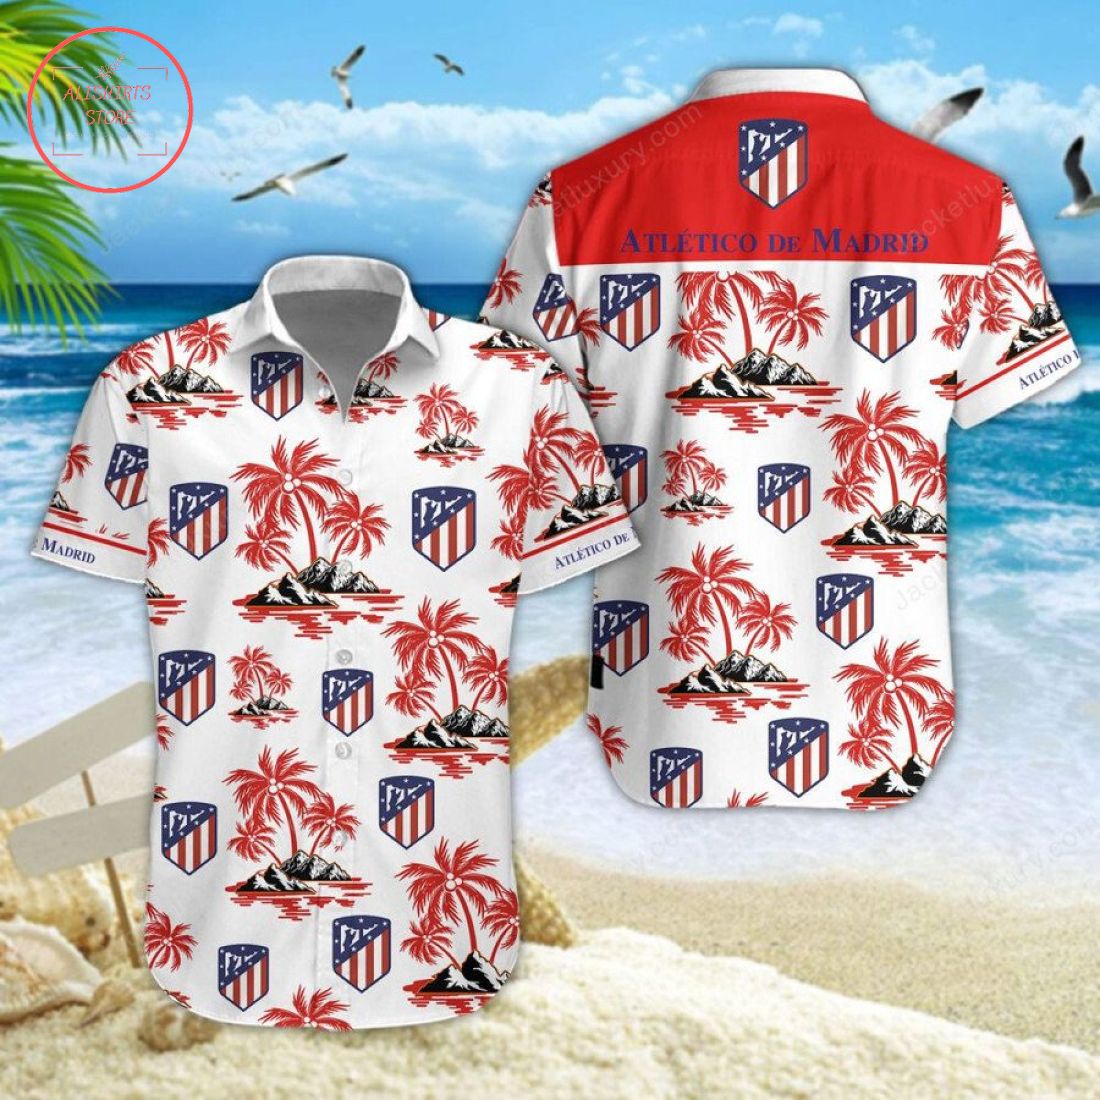 Atletico de Madrid Hawaiian Shirt and Shorts